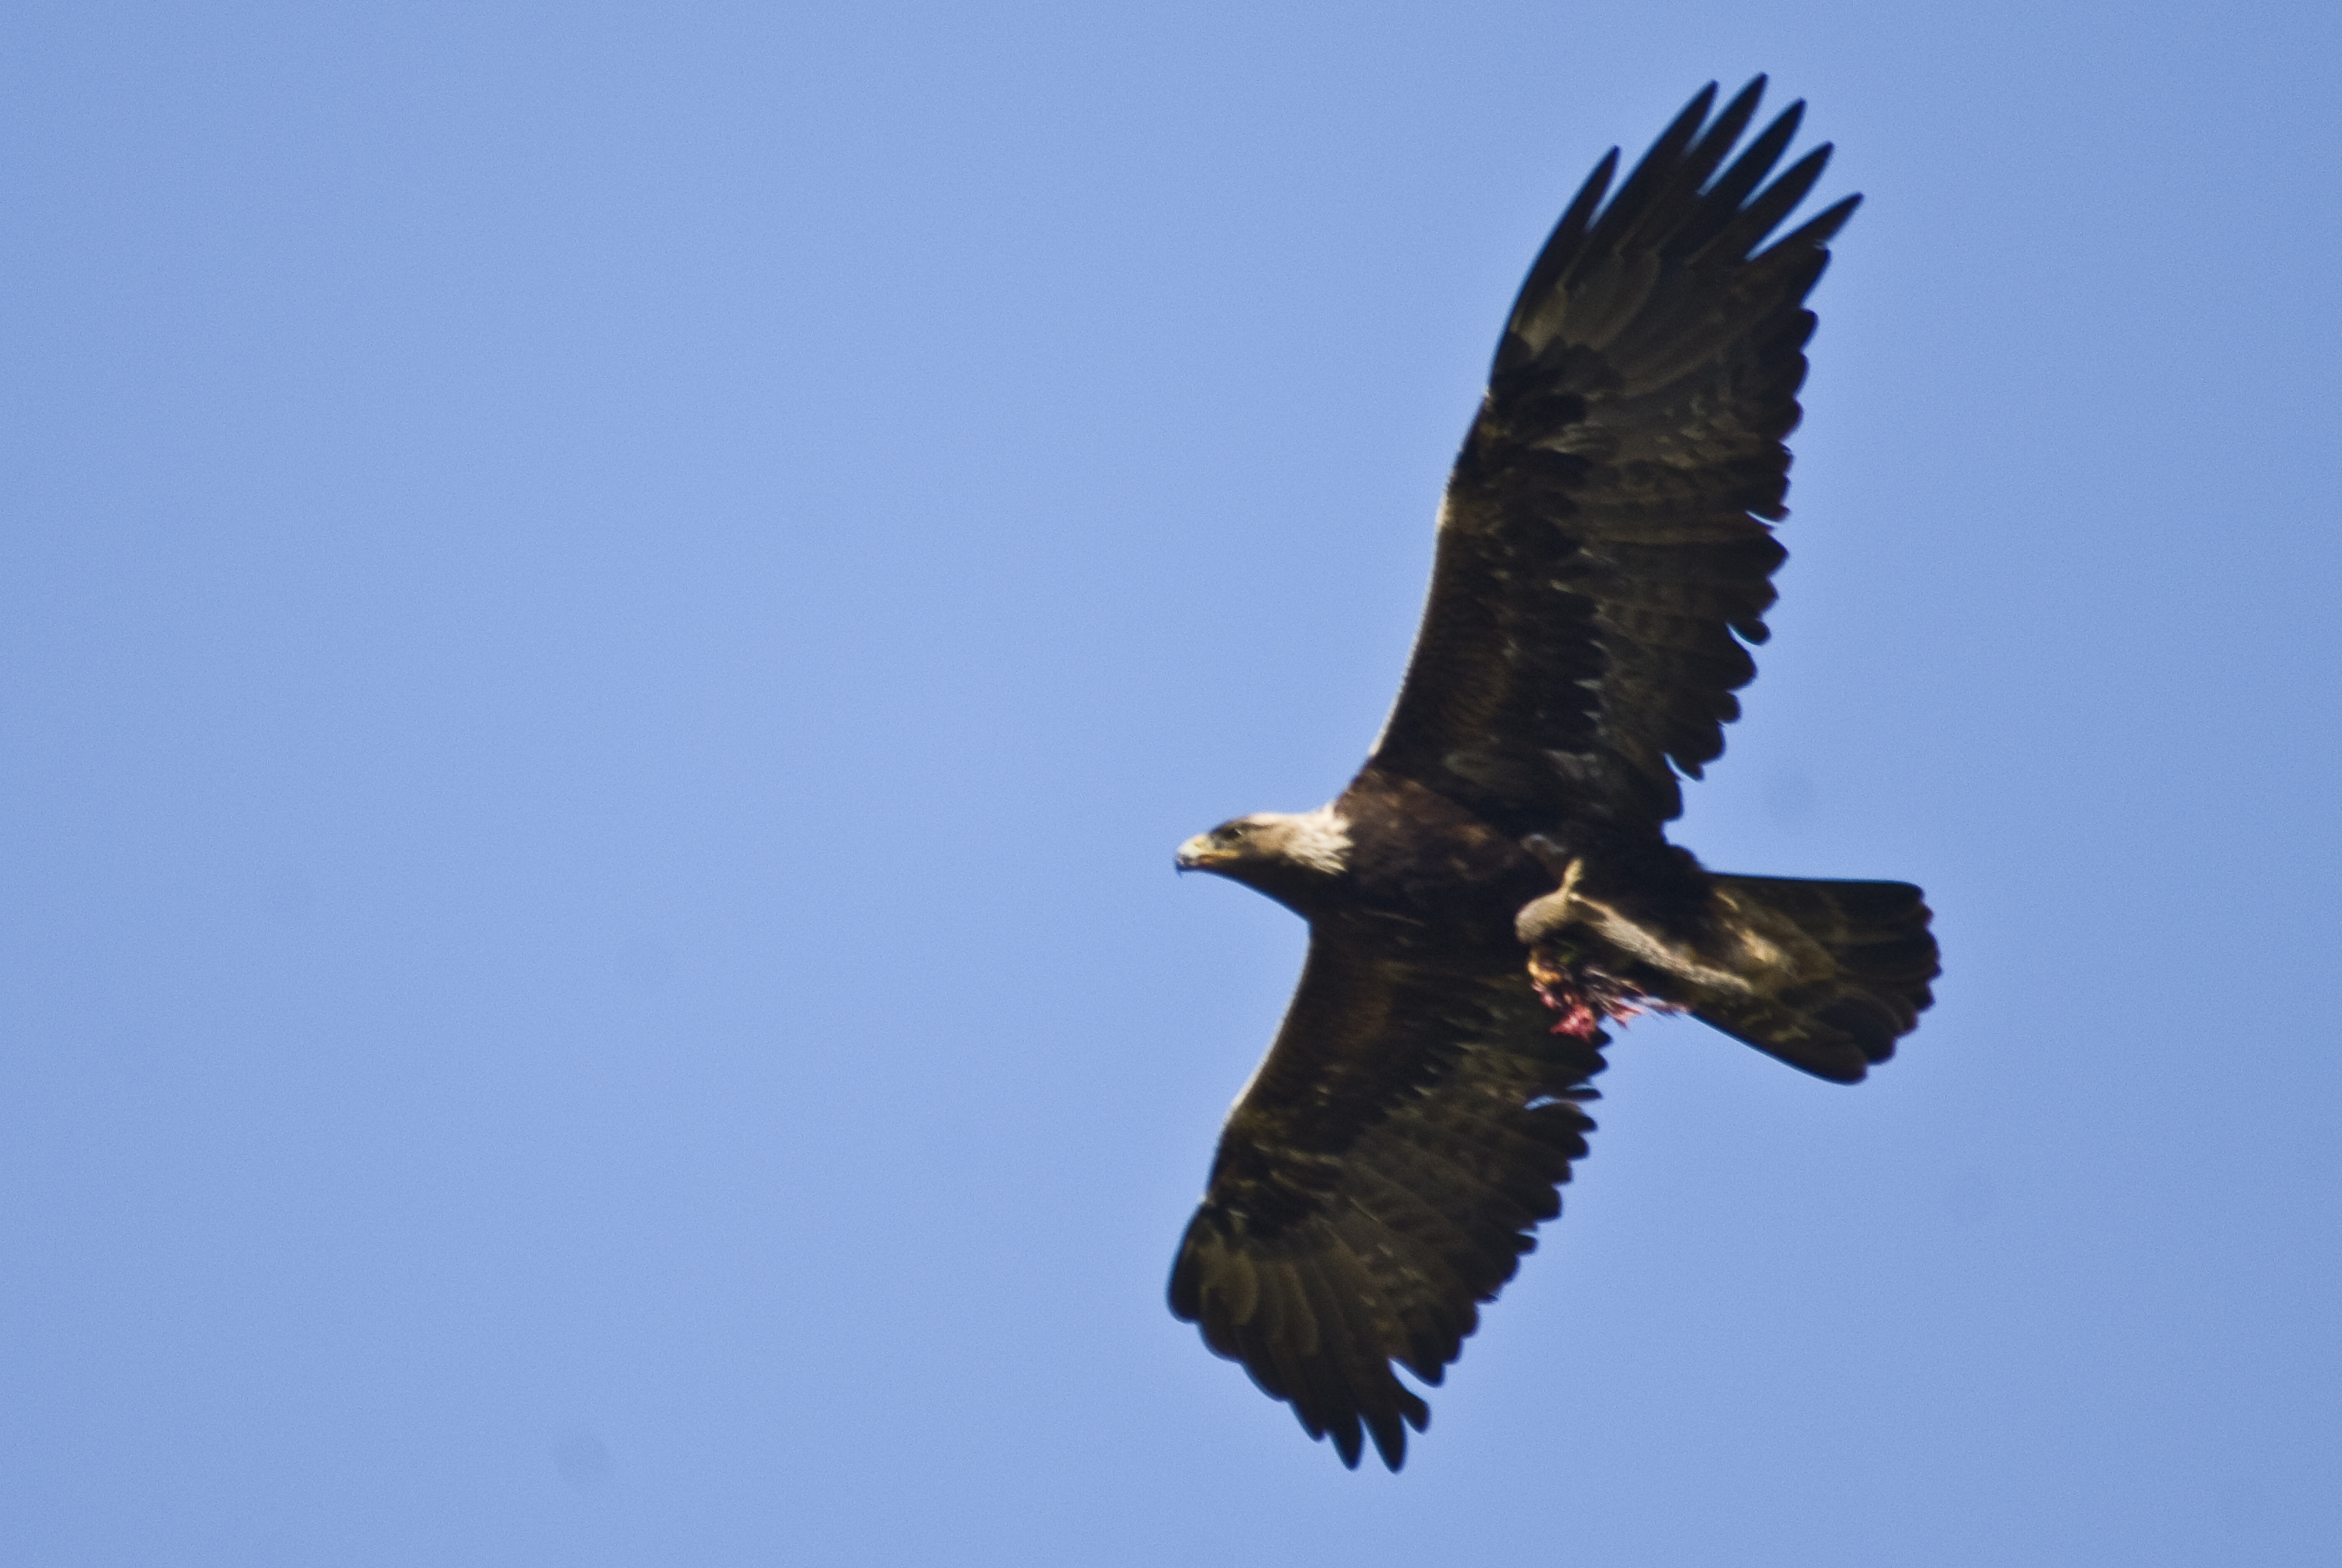 File:Golden Eagle flying.jpg - Wikimedia Commons